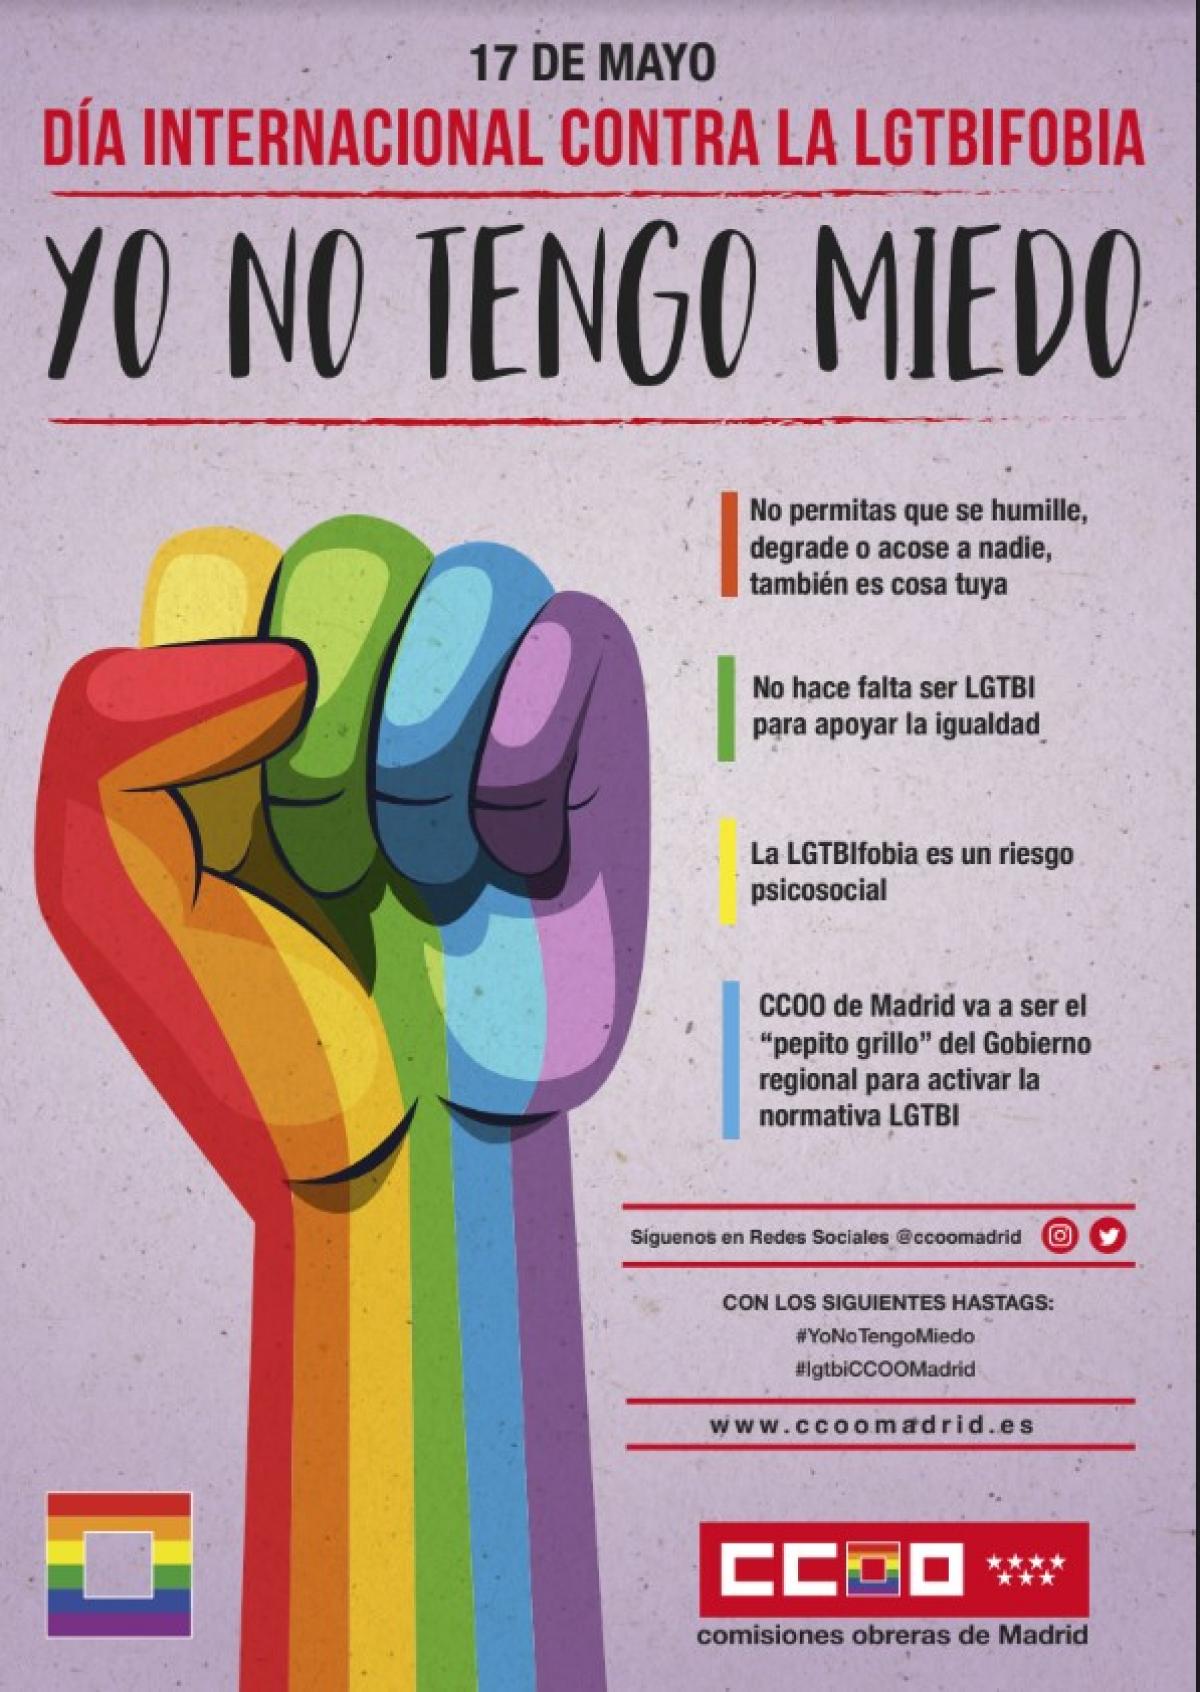 CCOO reivindica centros de trabajo libres de discriminación hacia el colectivo LGTBI